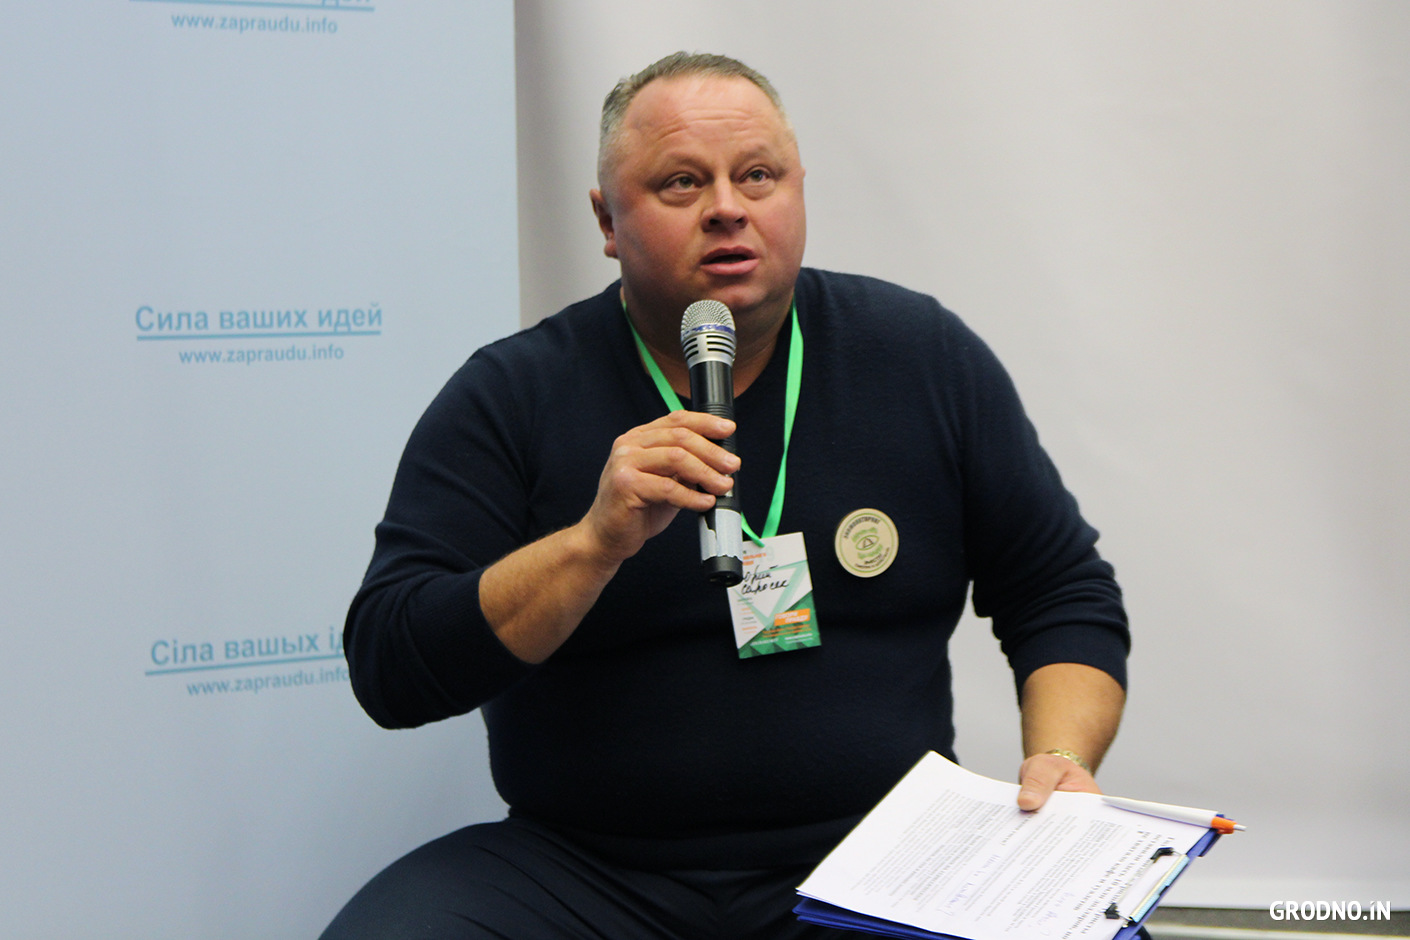 Юрий Саросек,
Директор ООО «ПрайдТур». Соучредитель первой сети быстрого питания в Гродно